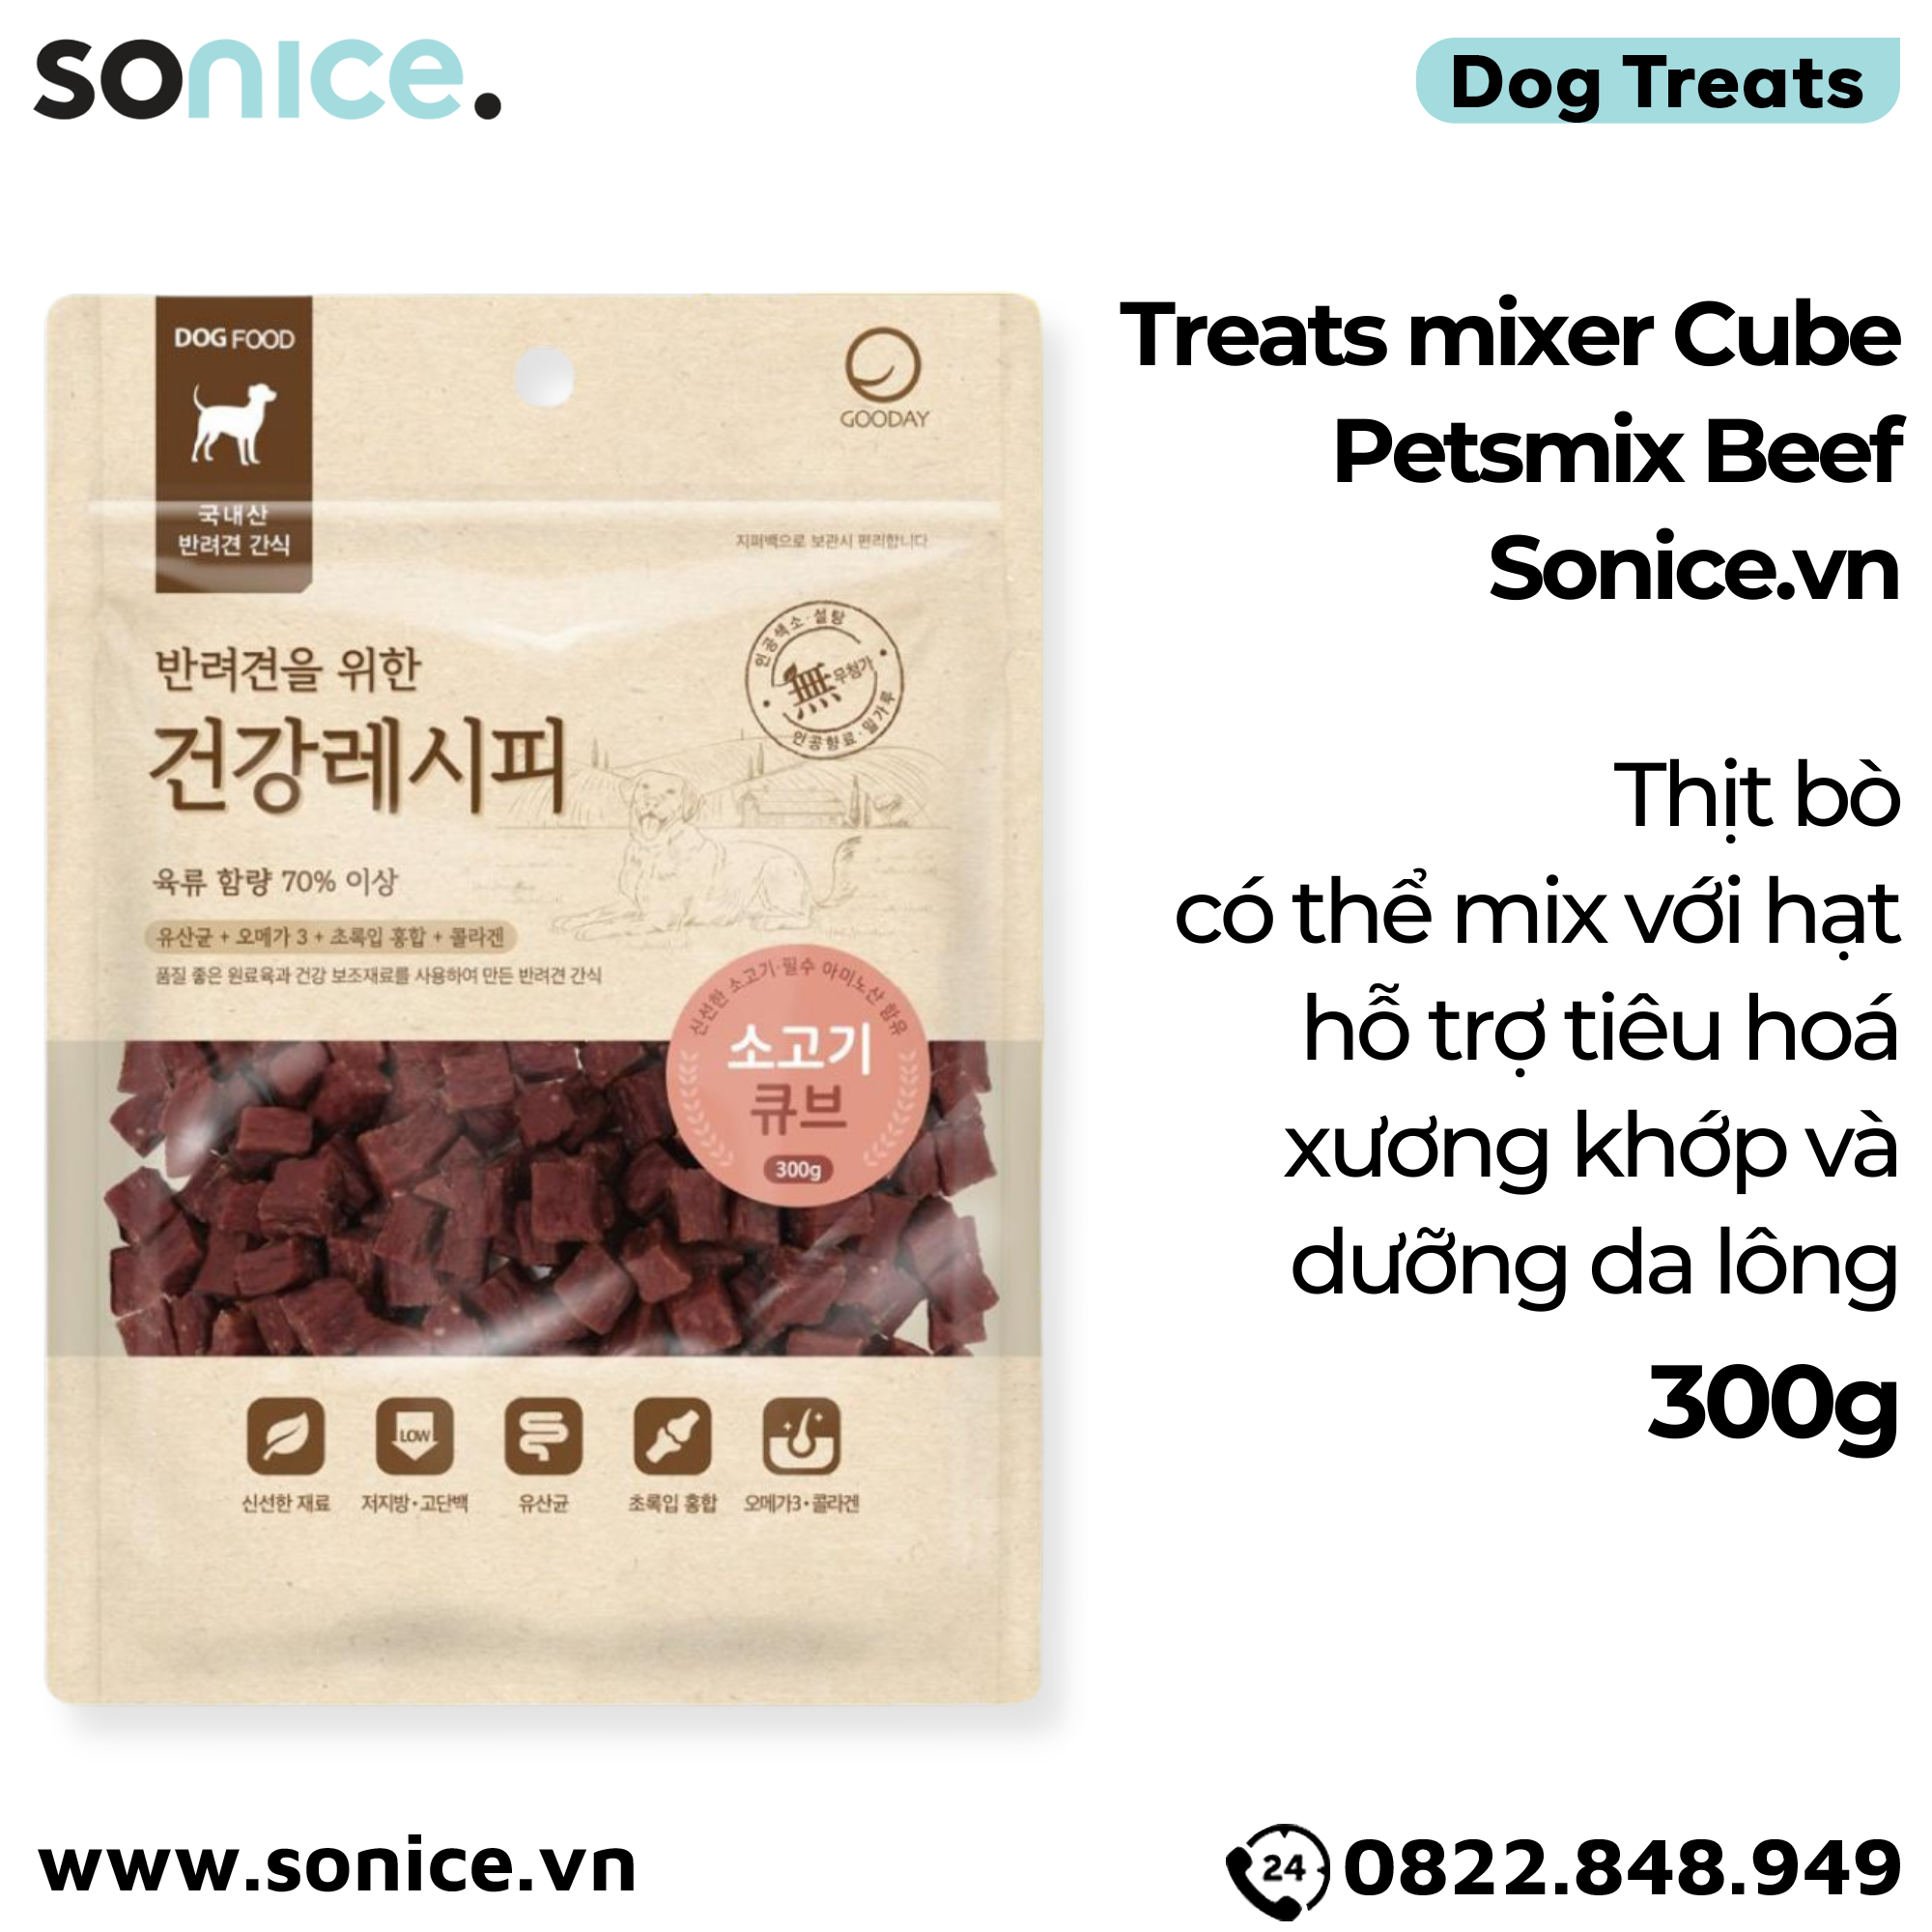  Treats mixer Cube Petsmix Beef 300g Korea - Thịt bò, có thể mix với hạt, hỗ trợ tiêu hoá, xương khớp, dưỡng da lông SONICE. 